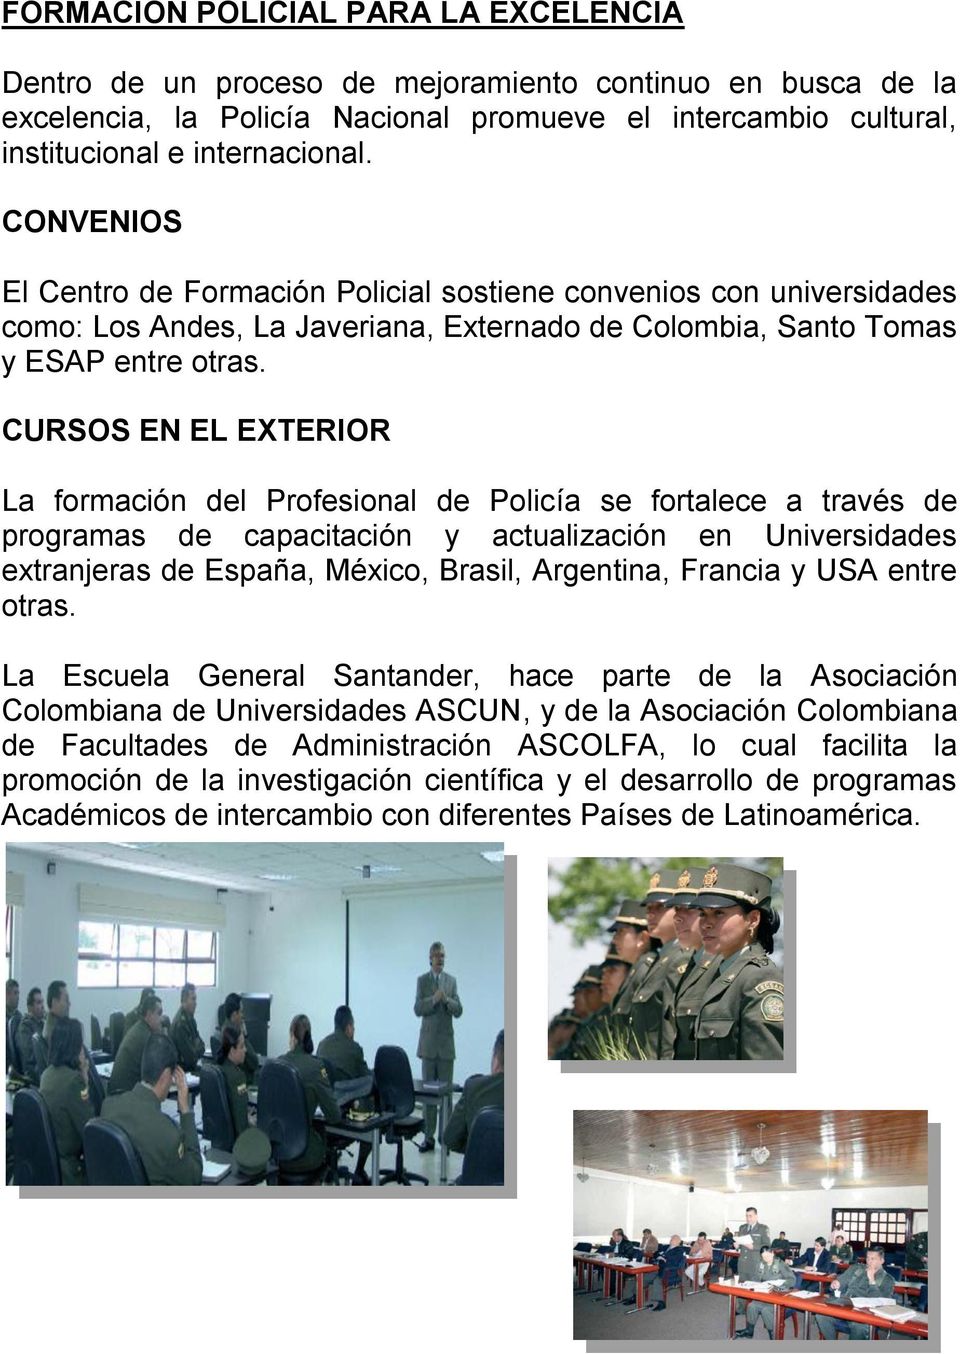 CURSOS EN EL EXTERIOR La formación del Profesional de Policía se fortalece a través de programas de capacitación y actualización en Universidades extranjeras de España, México, Brasil, Argentina,